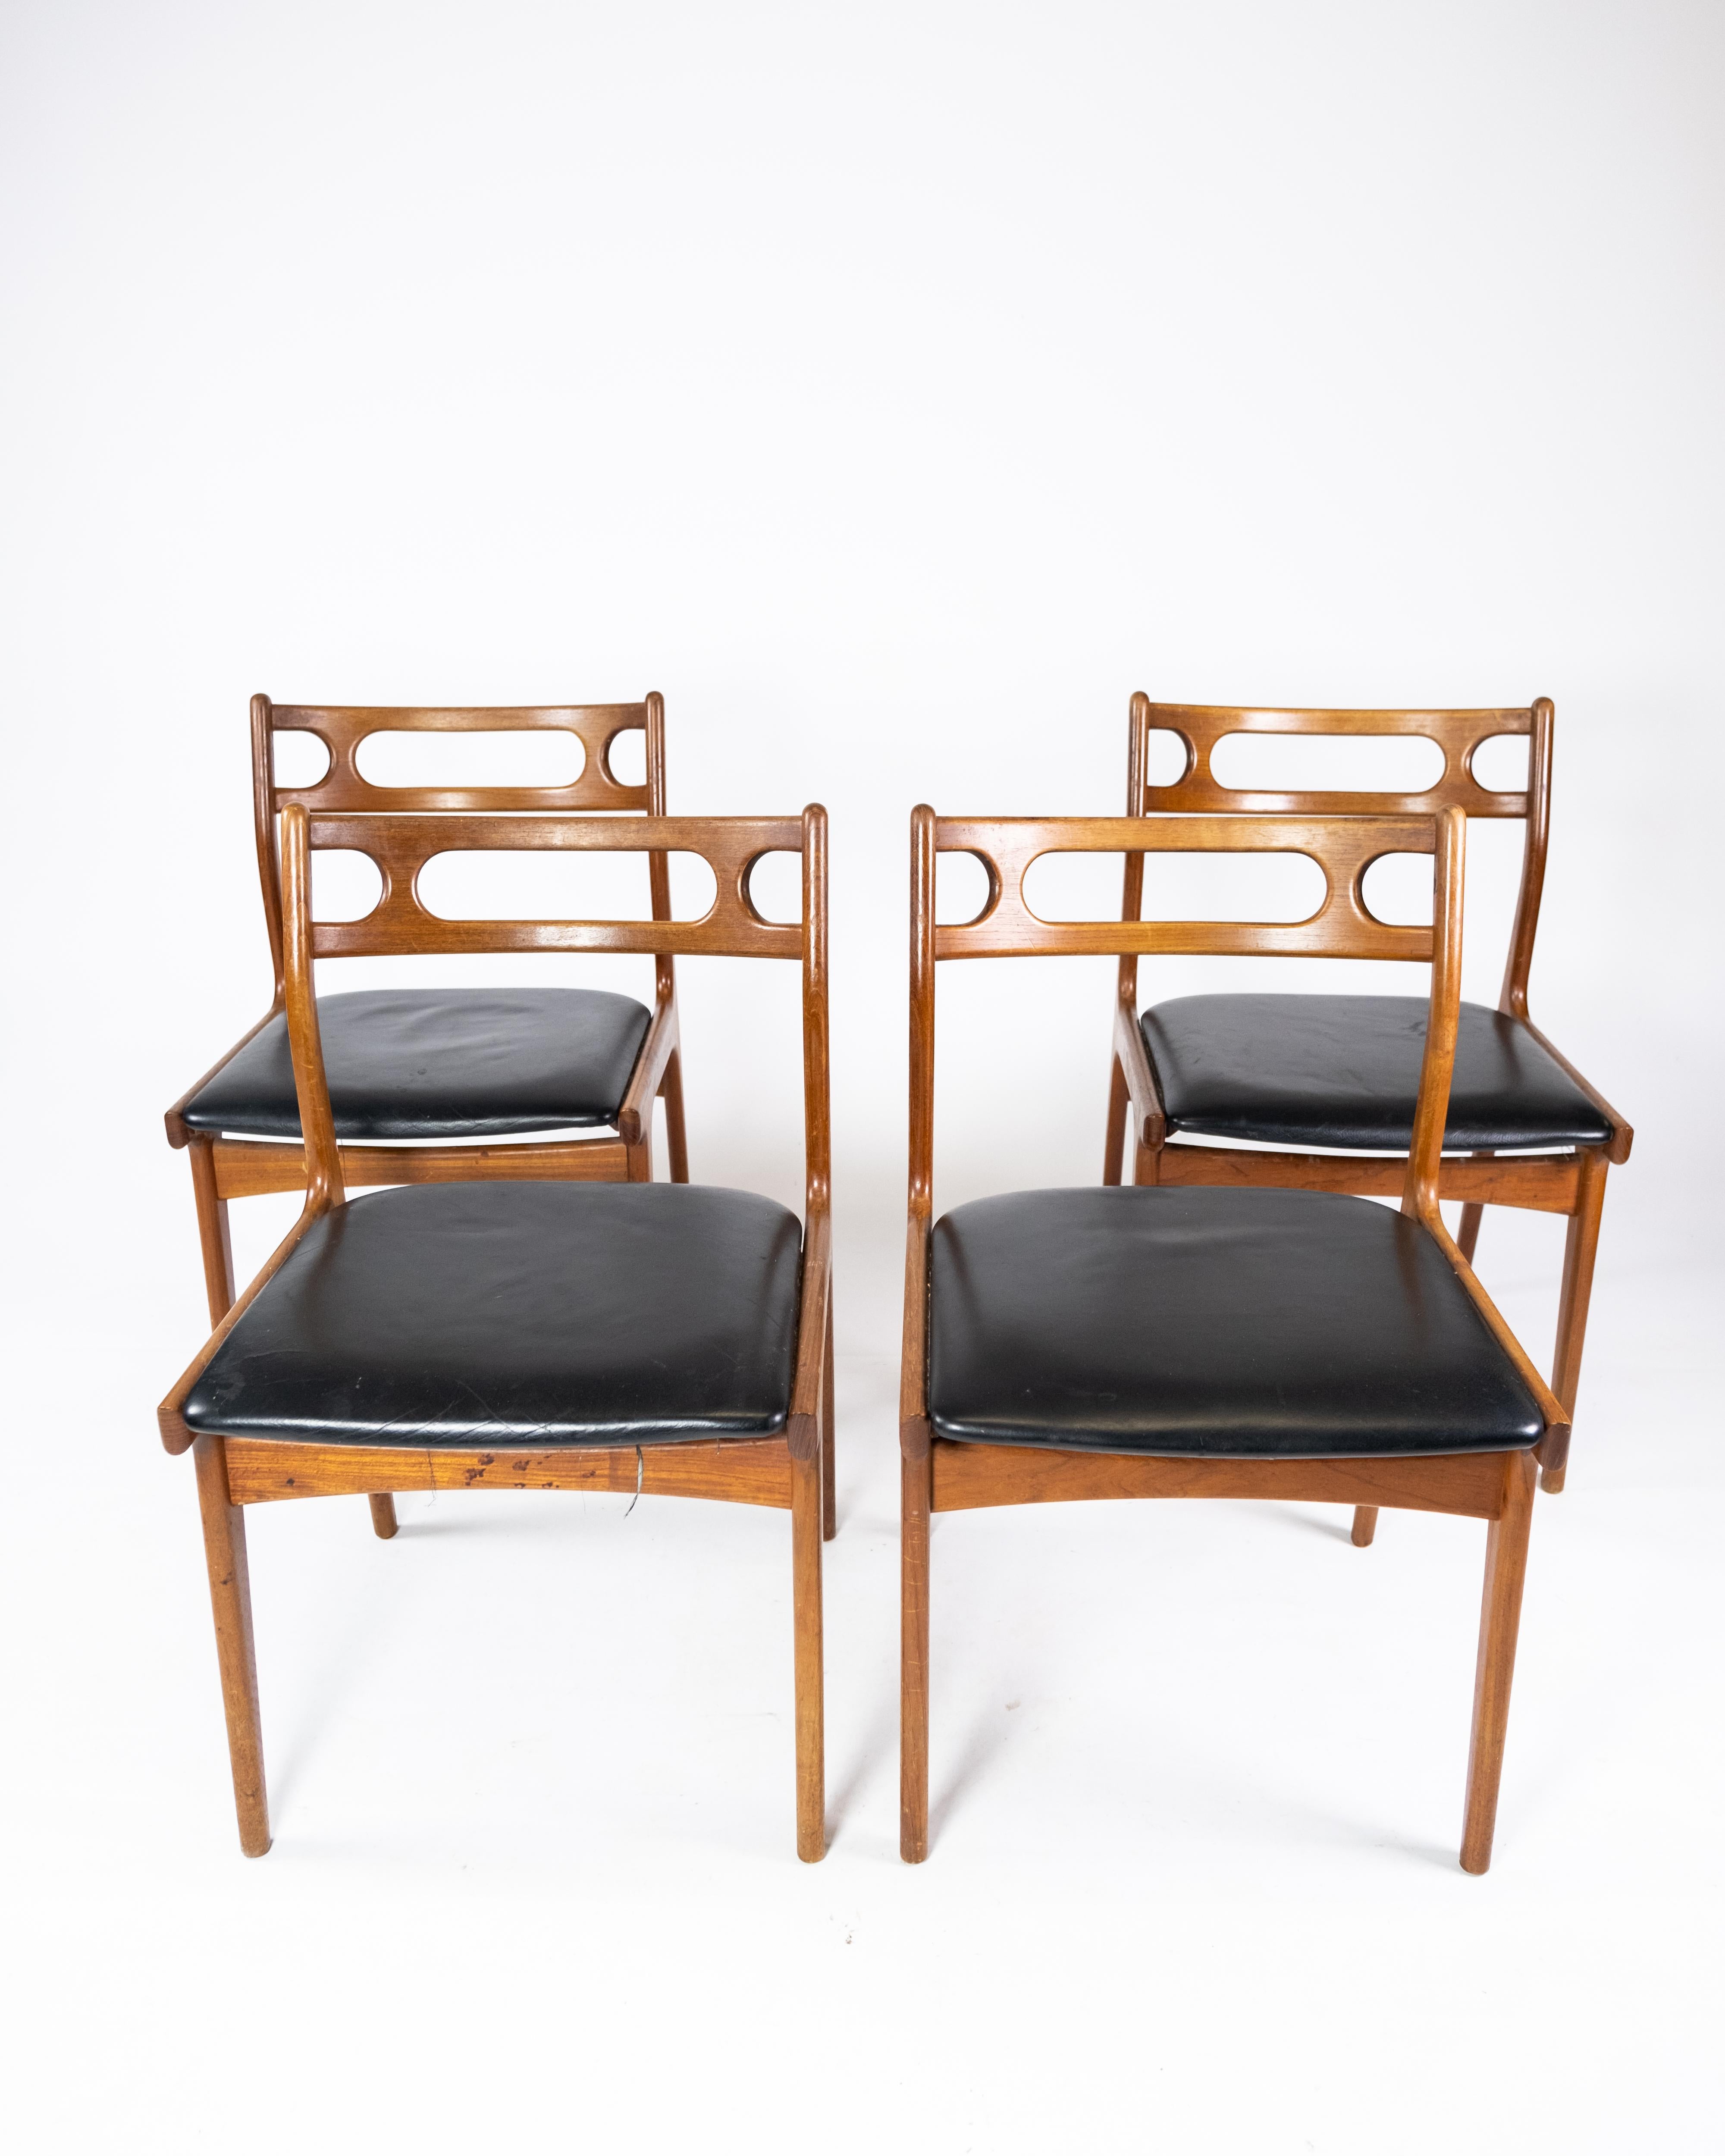 Dieses Set aus vier Esszimmerstühlen aus den 1960er Jahren ist ein schönes Beispiel für die Eleganz und Funktionalität des dänischen Möbeldesigns. Die Stühle sind aus massivem Teakholz gefertigt, das ihnen sowohl Haltbarkeit als auch eine warme,